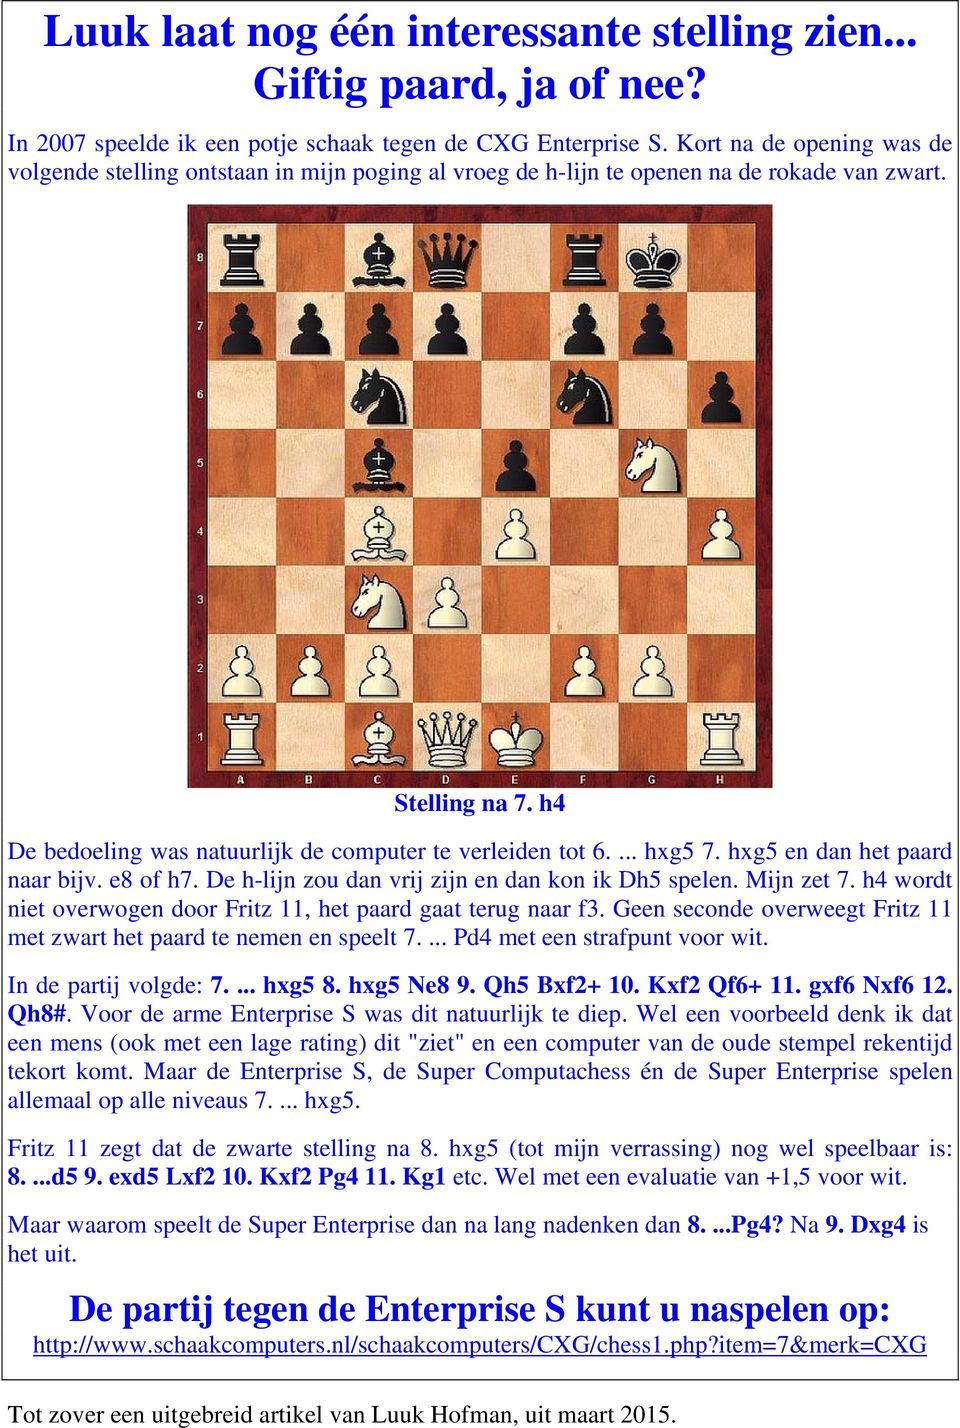 ... hxg5 7. hxg5 en dan het paard naar bijv. e8 of h7. De h-lijn zou dan vrij zijn en dan kon ik Dh5 spelen. Mijn zet 7. h4 wordt niet overwogen door Fritz 11, het paard gaat terug naar f3.